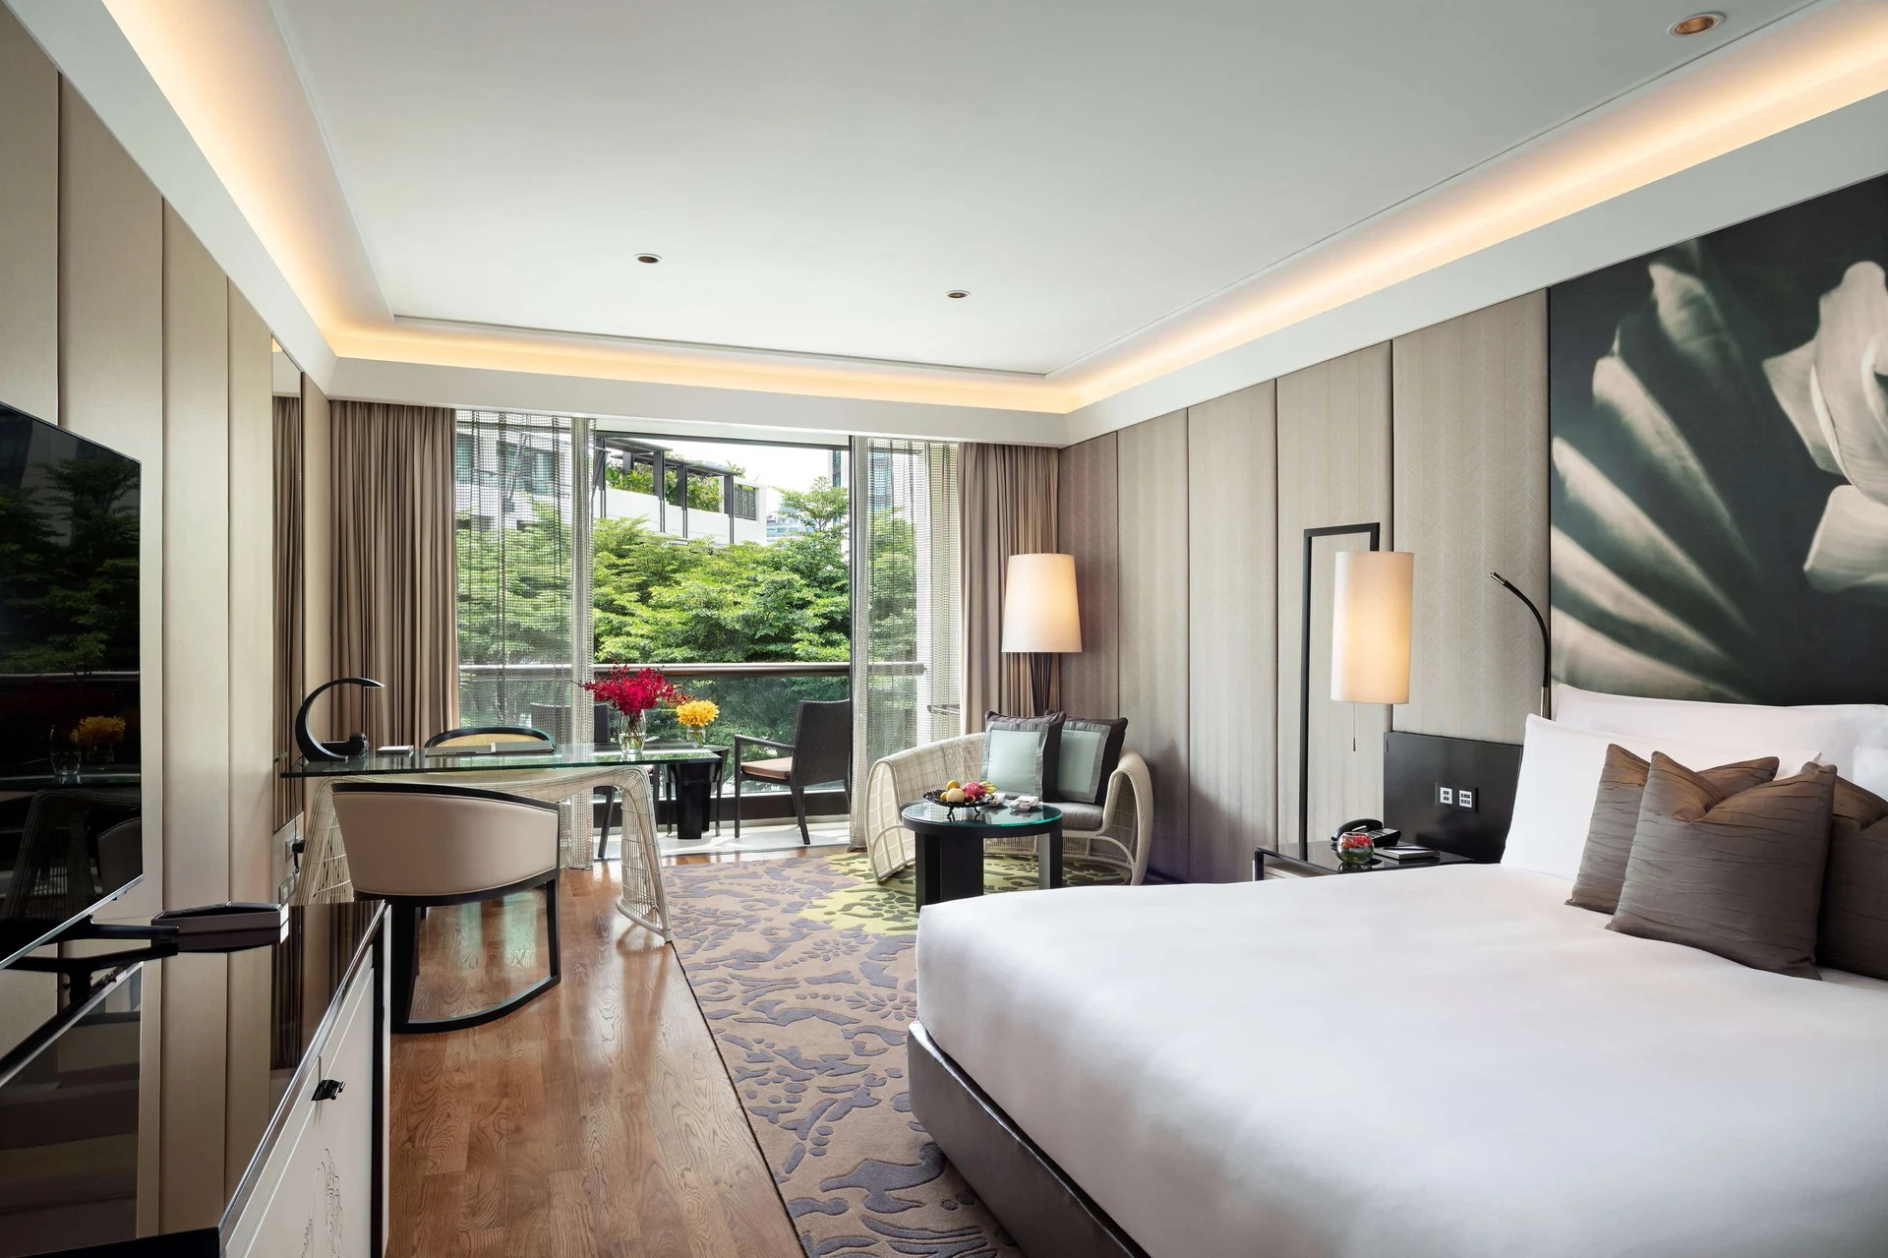 Room at Siam Kempinski Hotel Bangkok in Thailand. Click to enlarge.